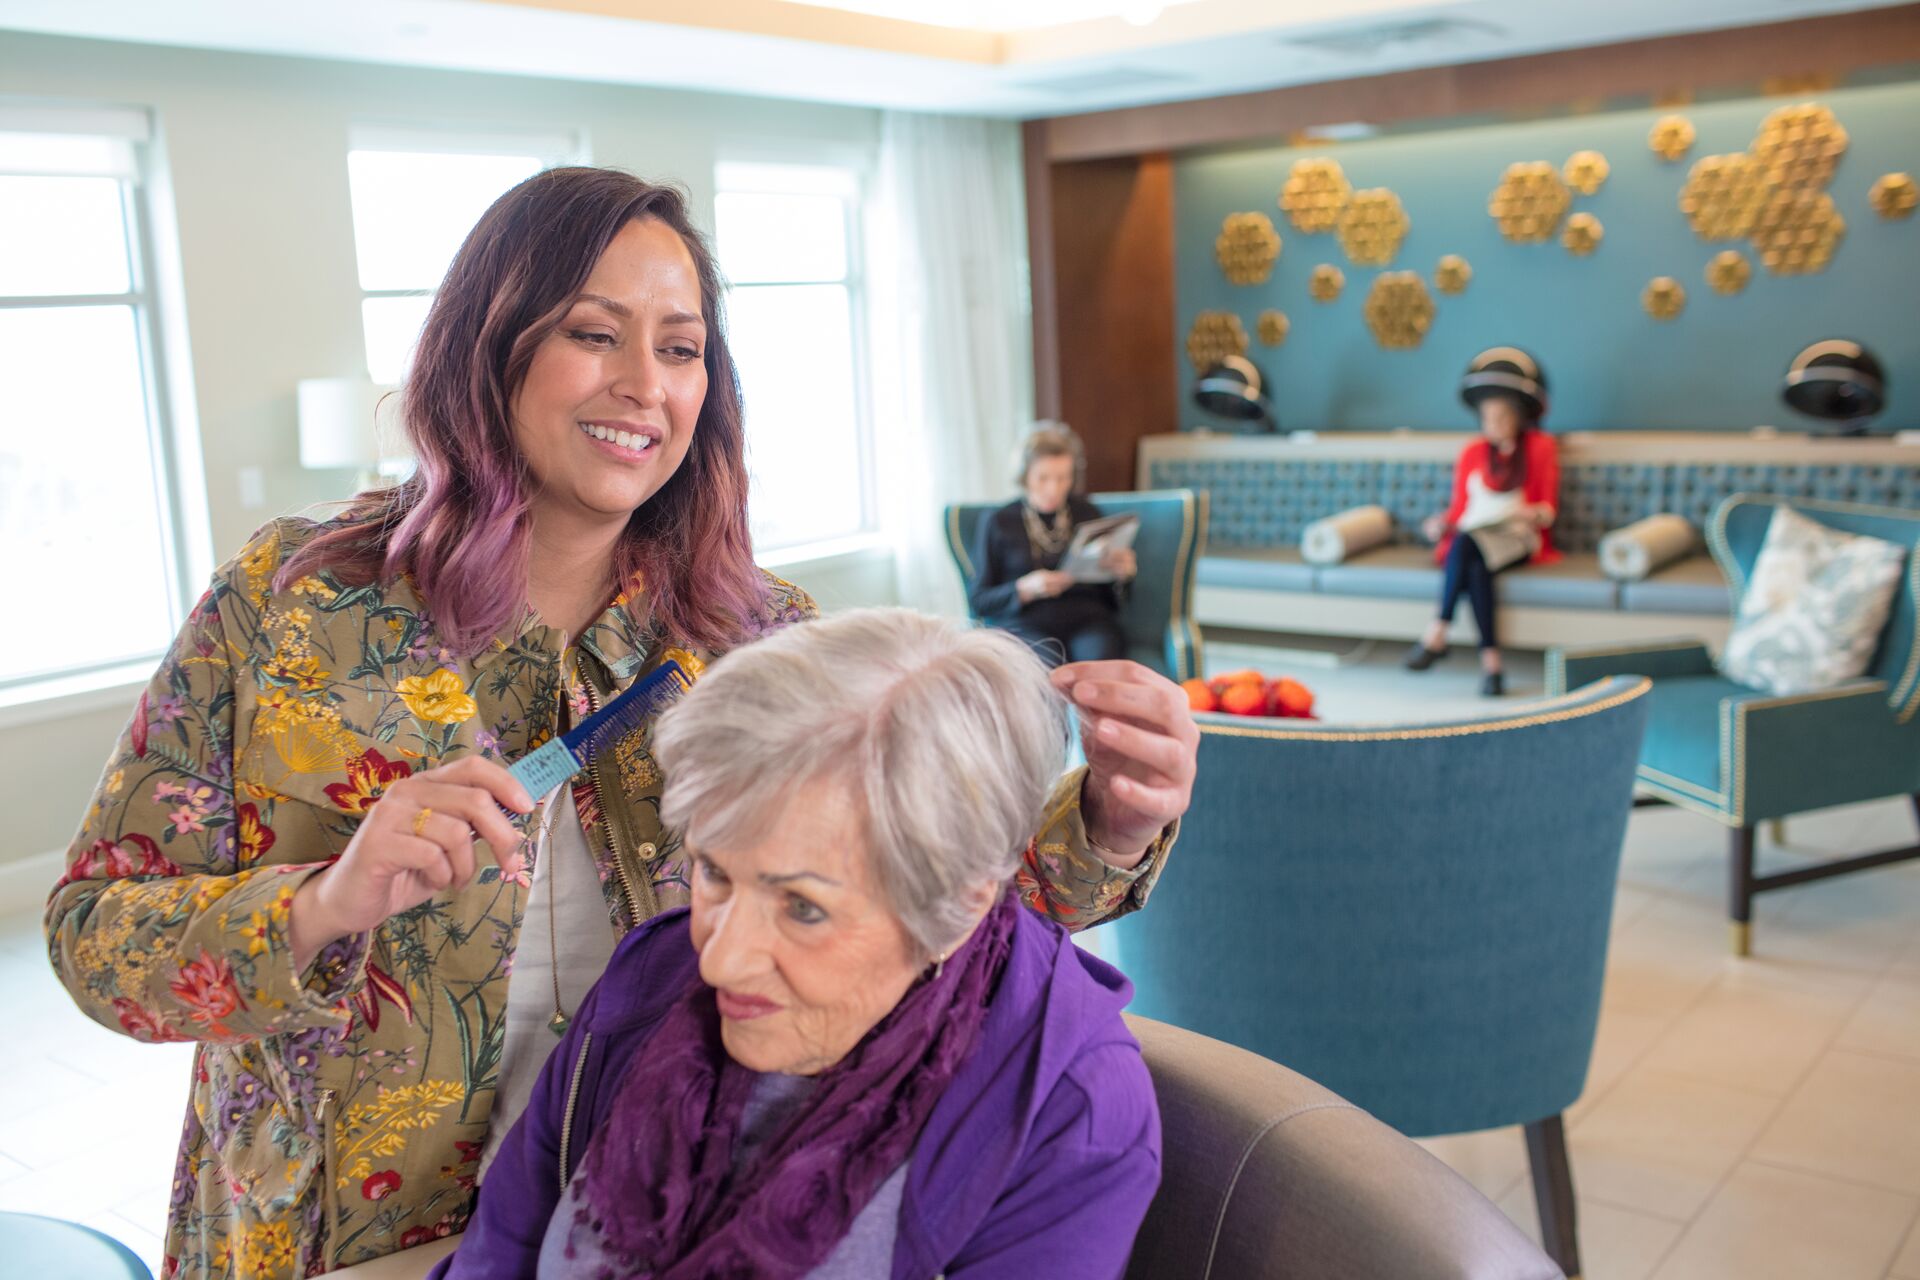 A hair stylist works on a senior woman's hair